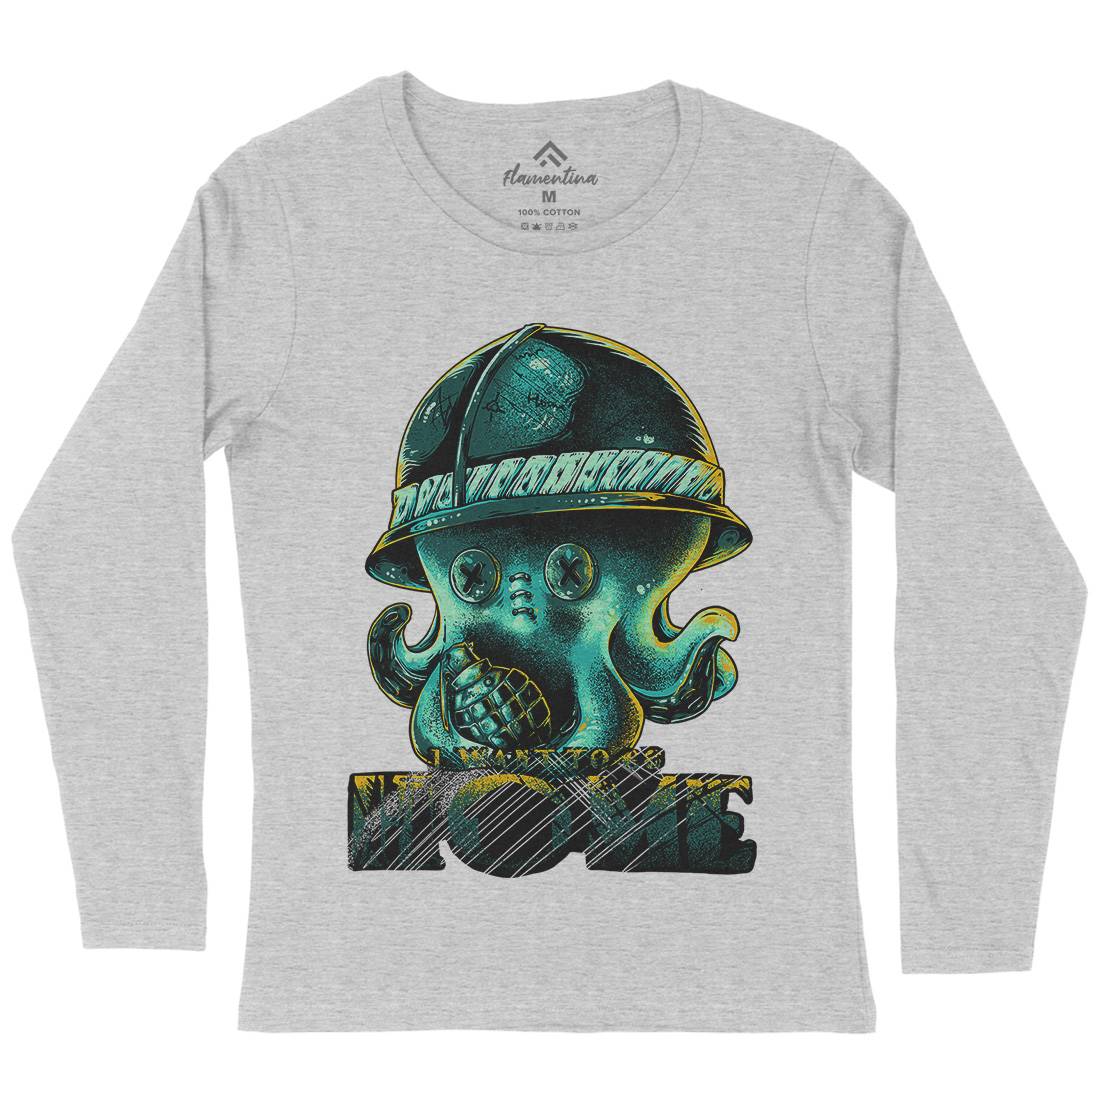 Octopus War Womens Long Sleeve T-Shirt Army B993